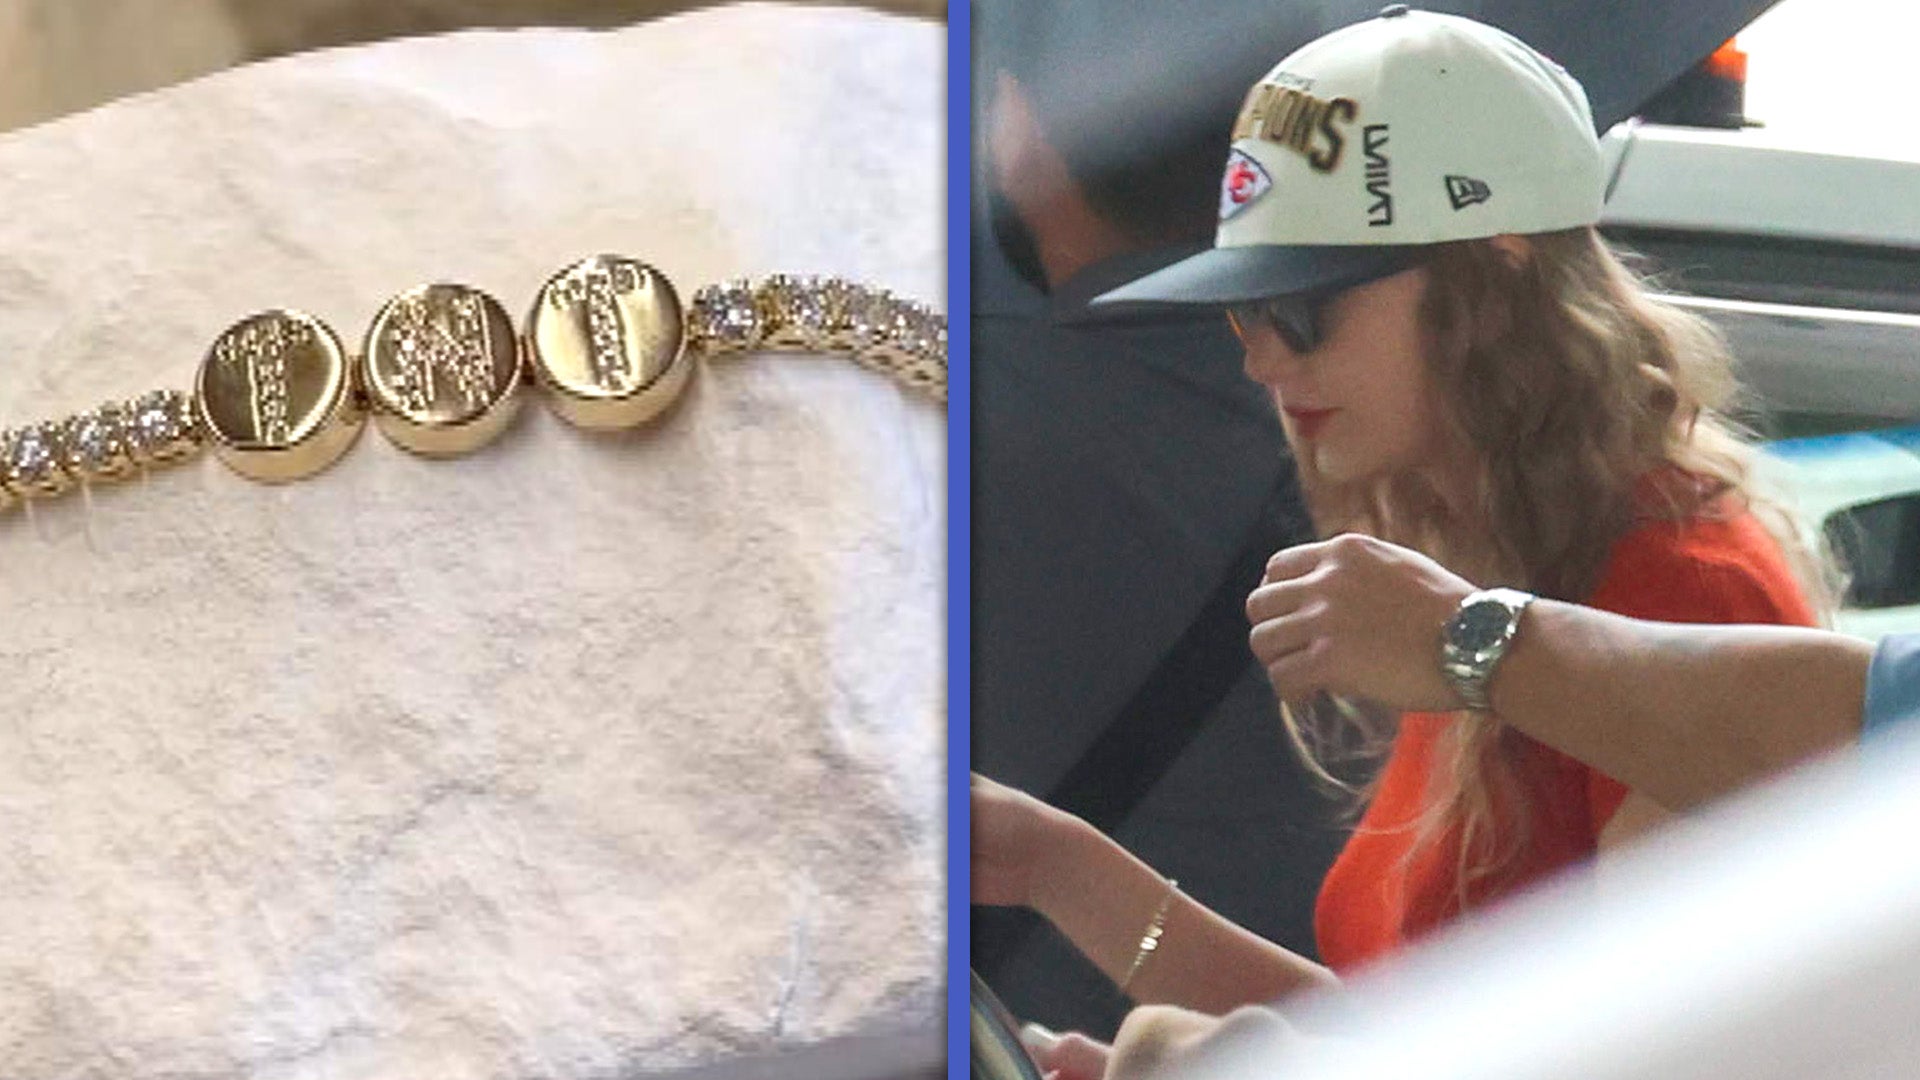 Taylor Swifts Rocks $6,500 ‘Taylor N Travis’ Friendship Bracelet